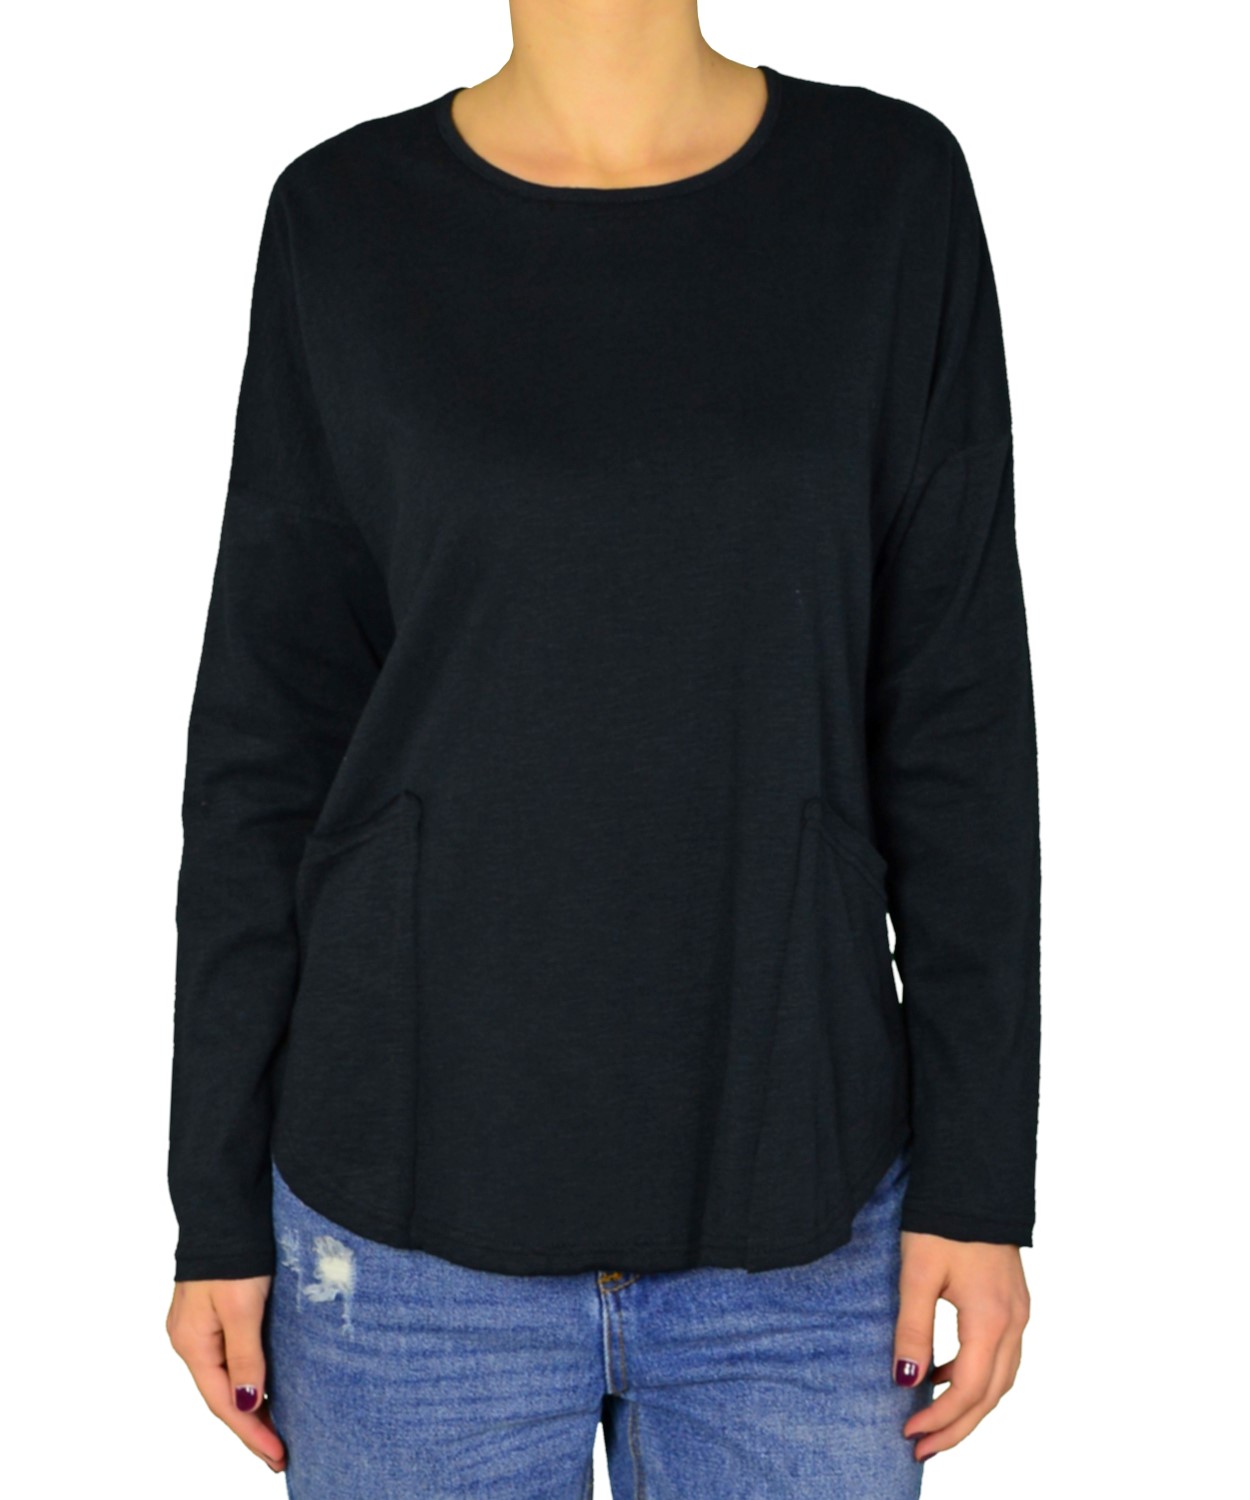 Γυναικεία μακρυμάνικη μπλούζα Lipsy μαύρη τσέπες 2170102C